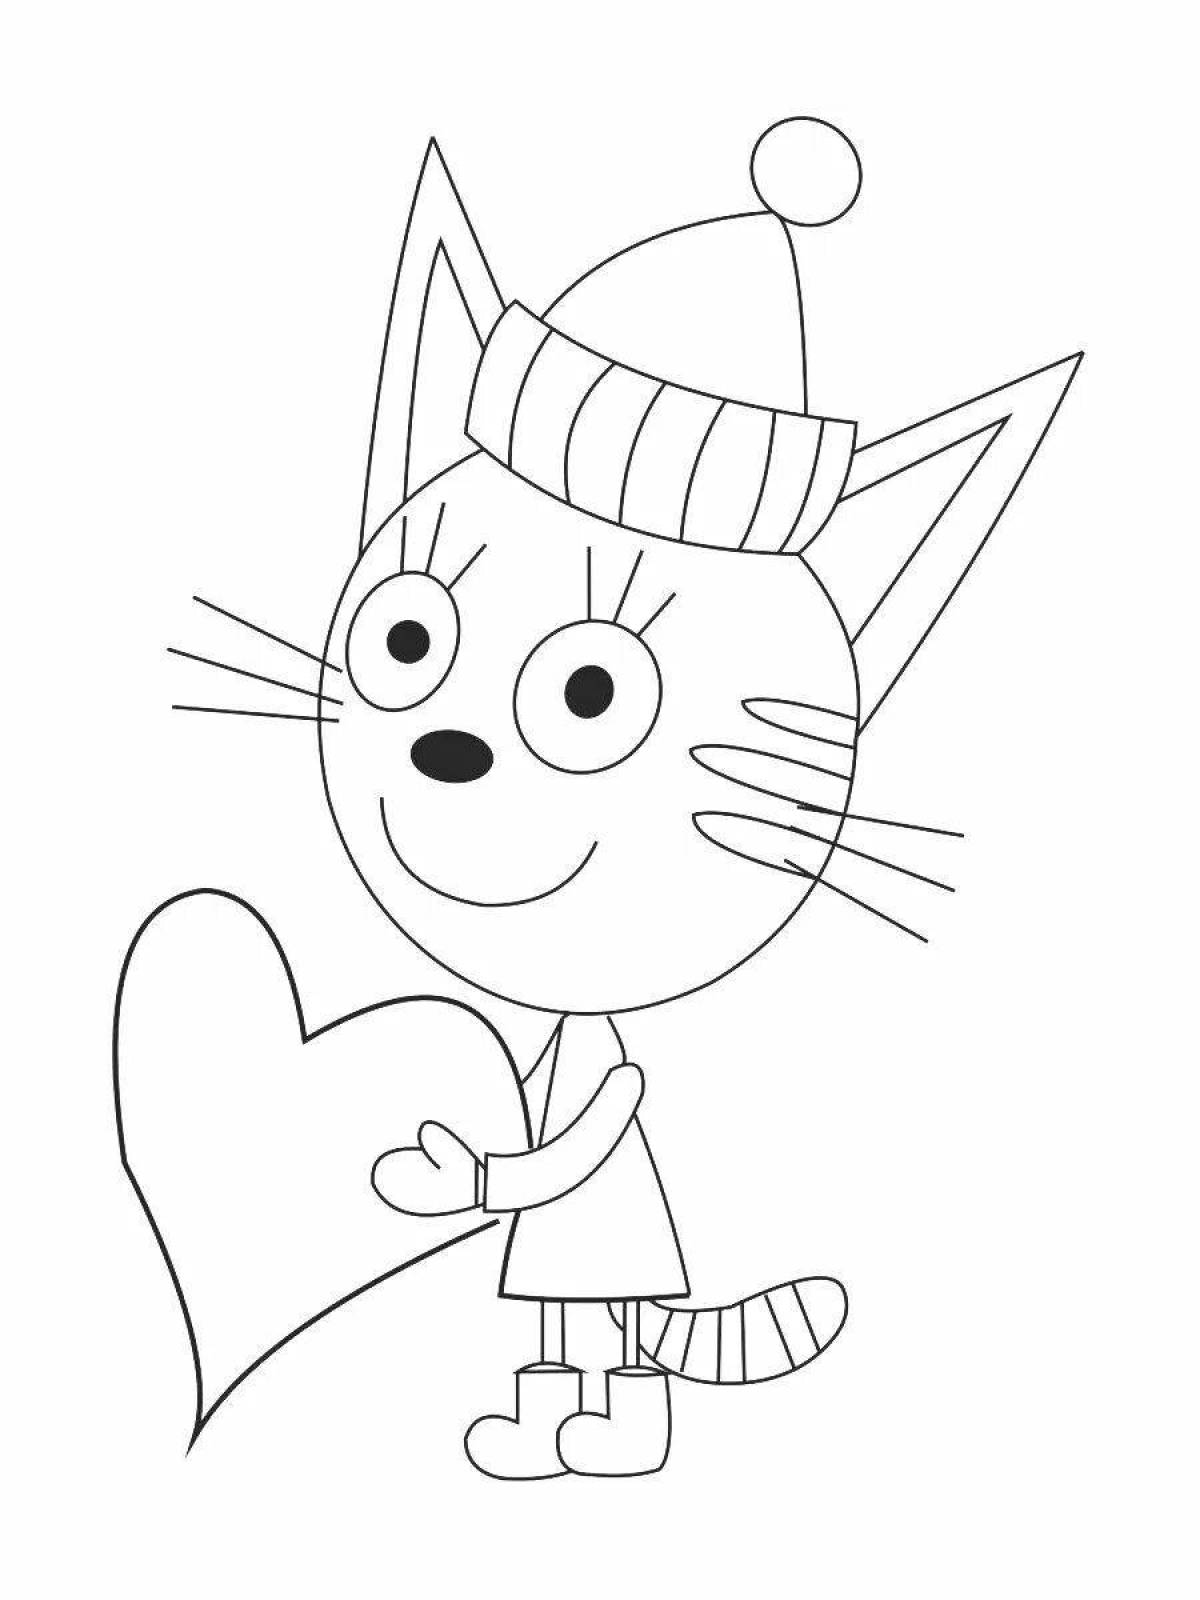 Magic coloring book for kids Mimimishki 3 cats